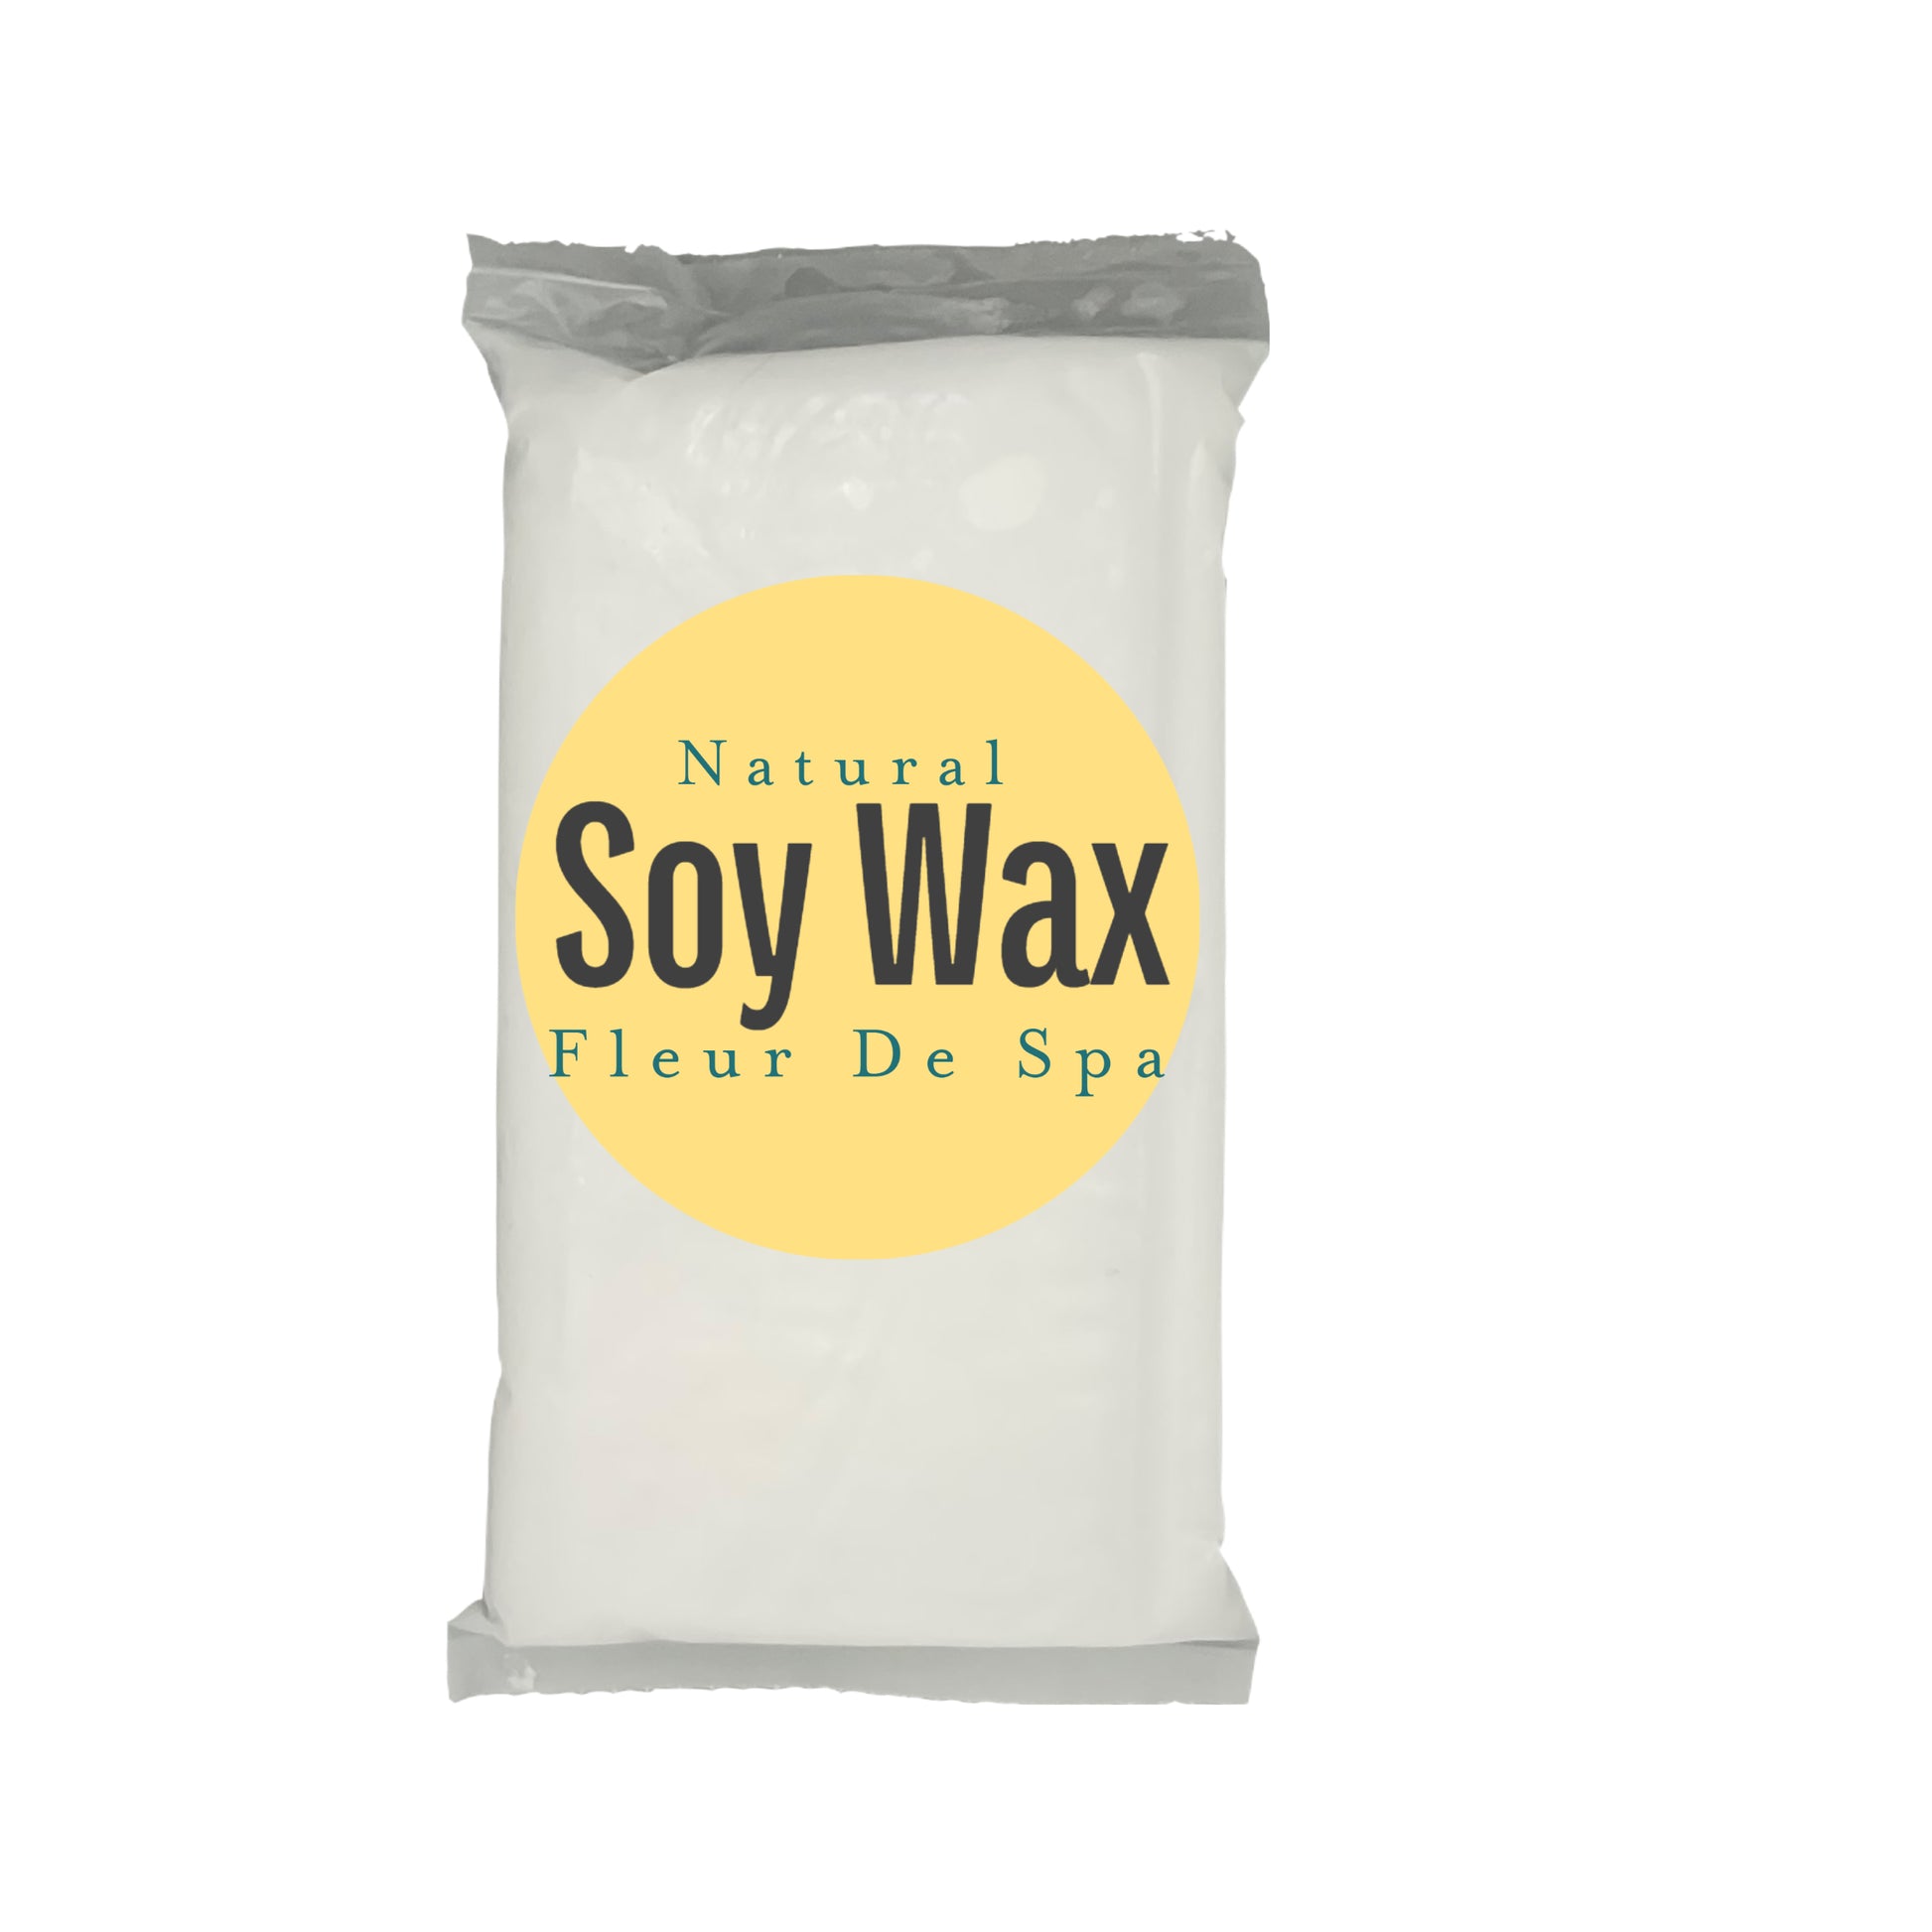 Natural Soy Wax